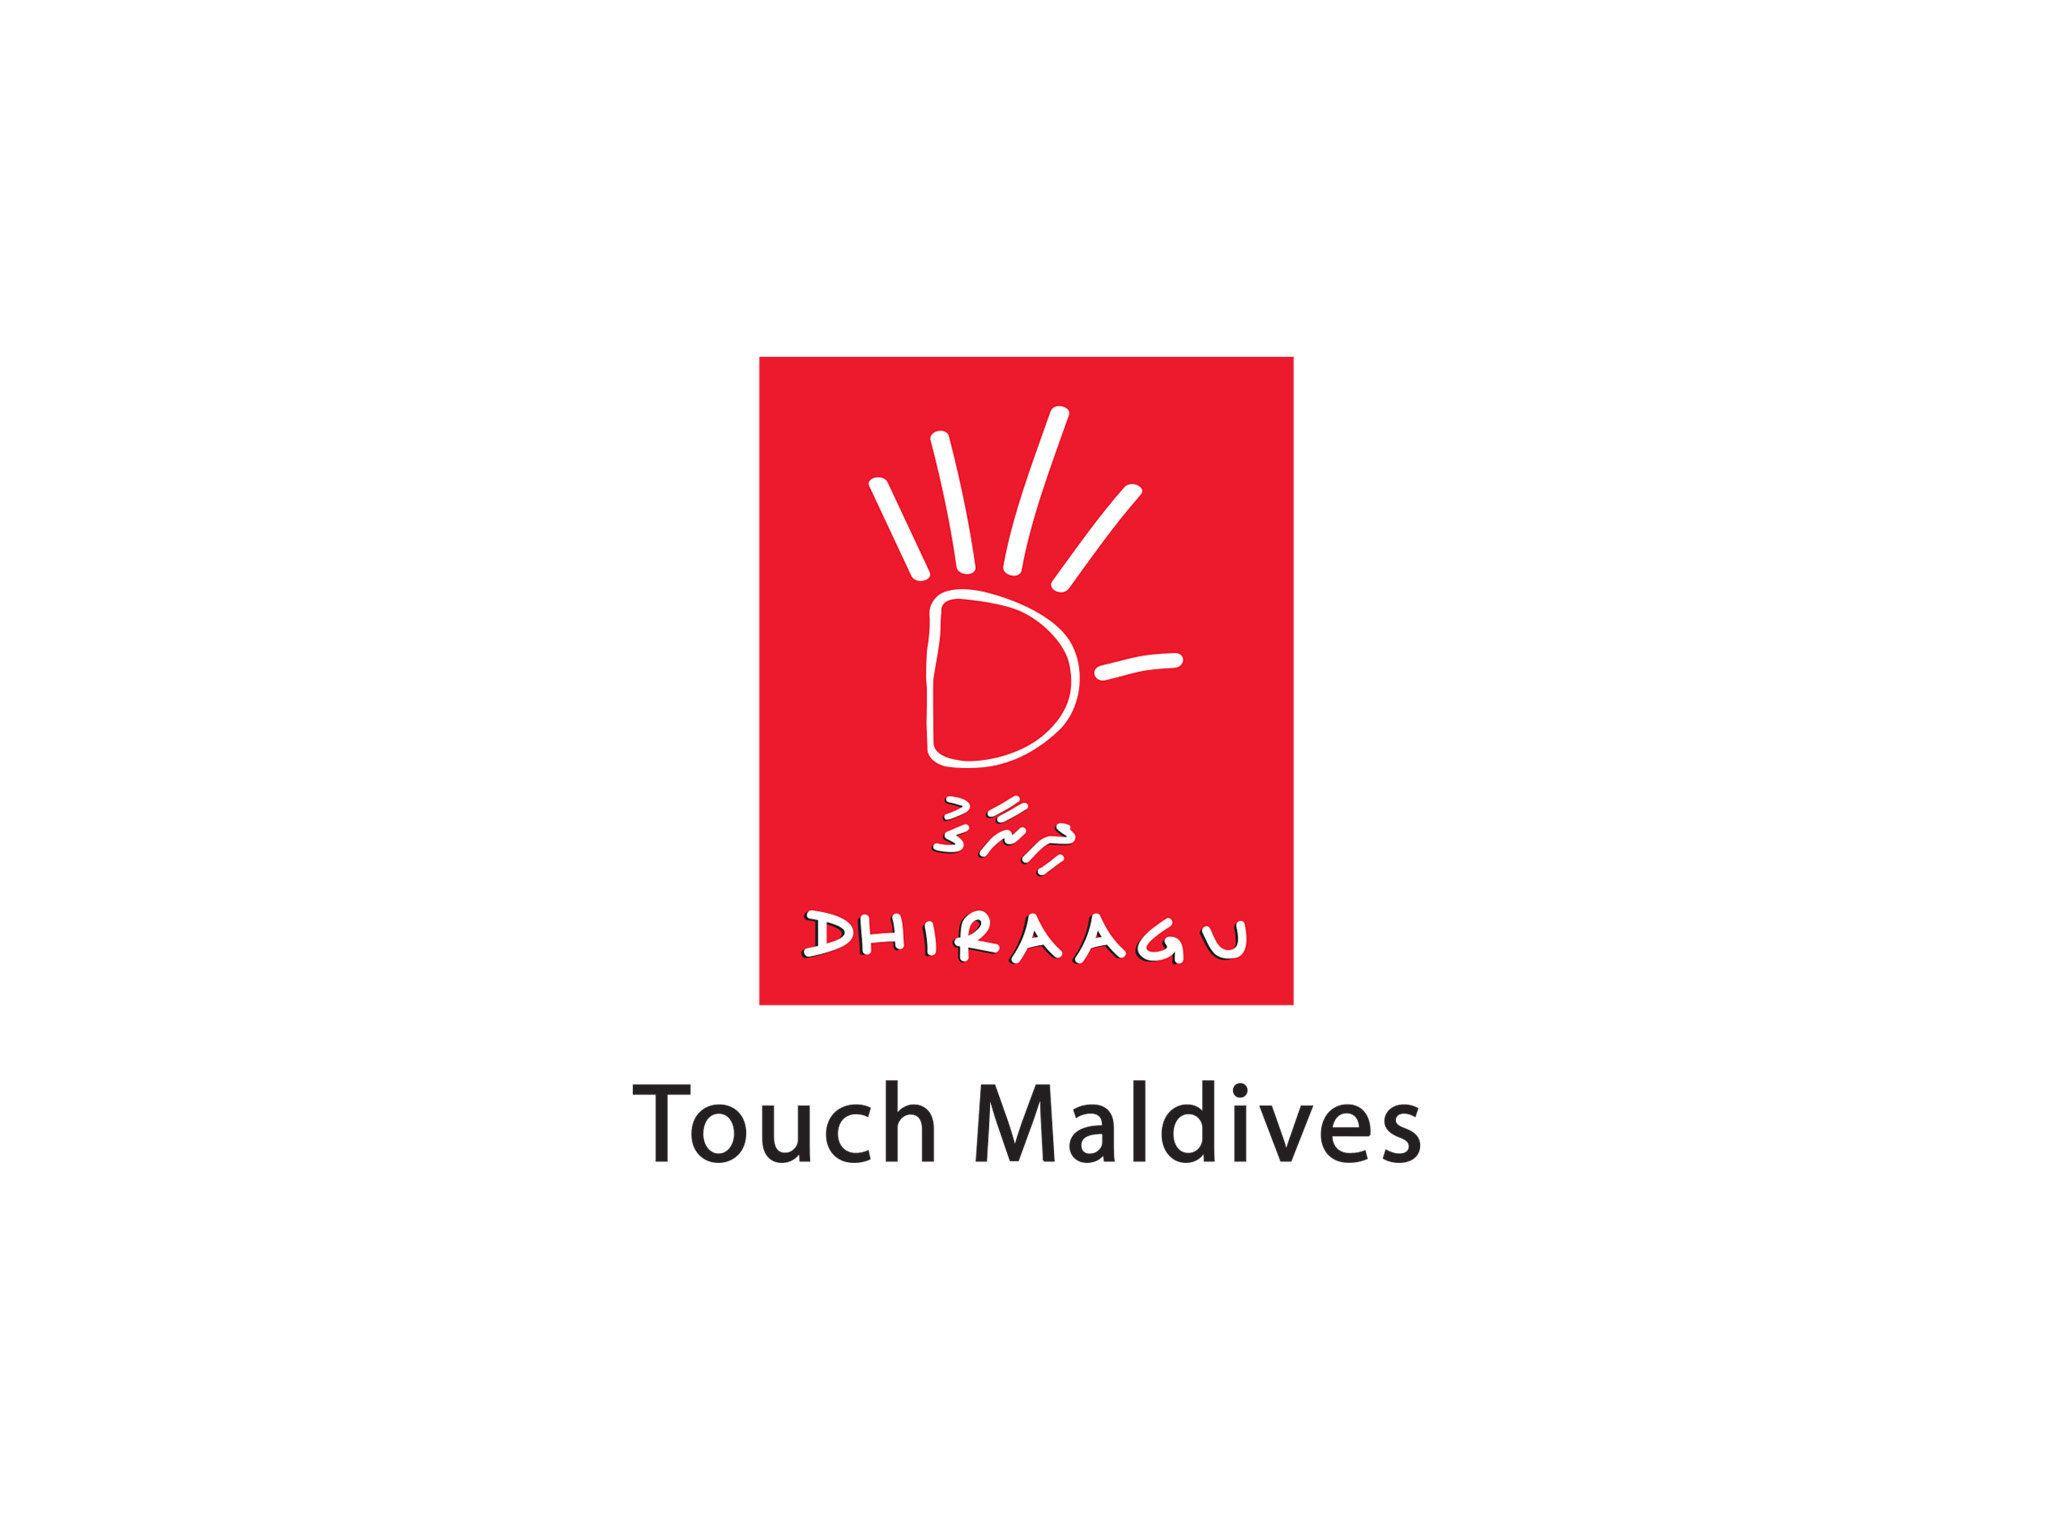 Dhiraagu Logo - Dhiraagu